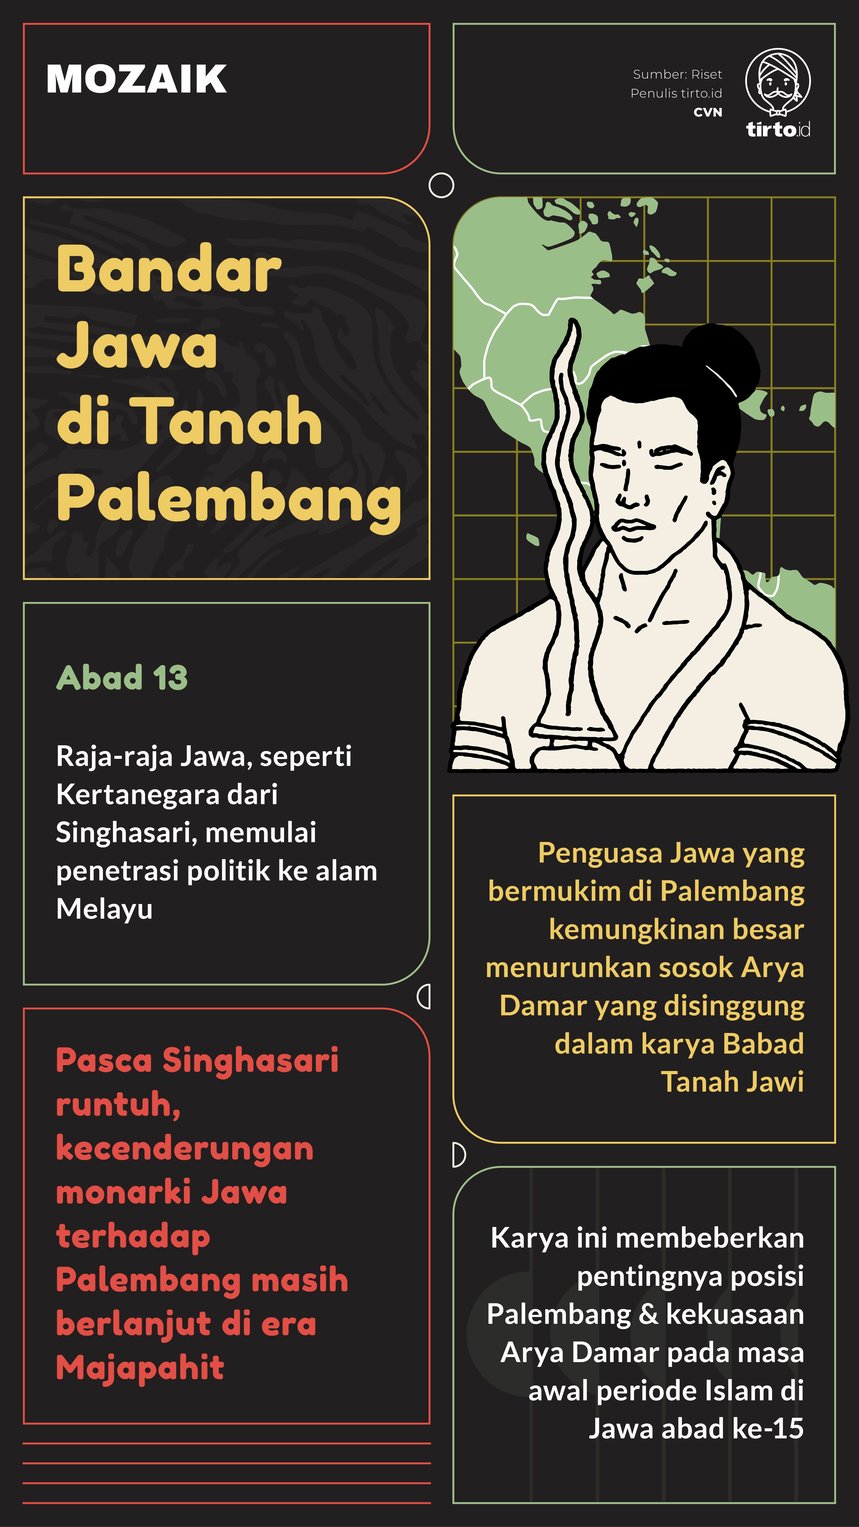 Infografik Mozaik Bandar Jawa di Tanah Palembang